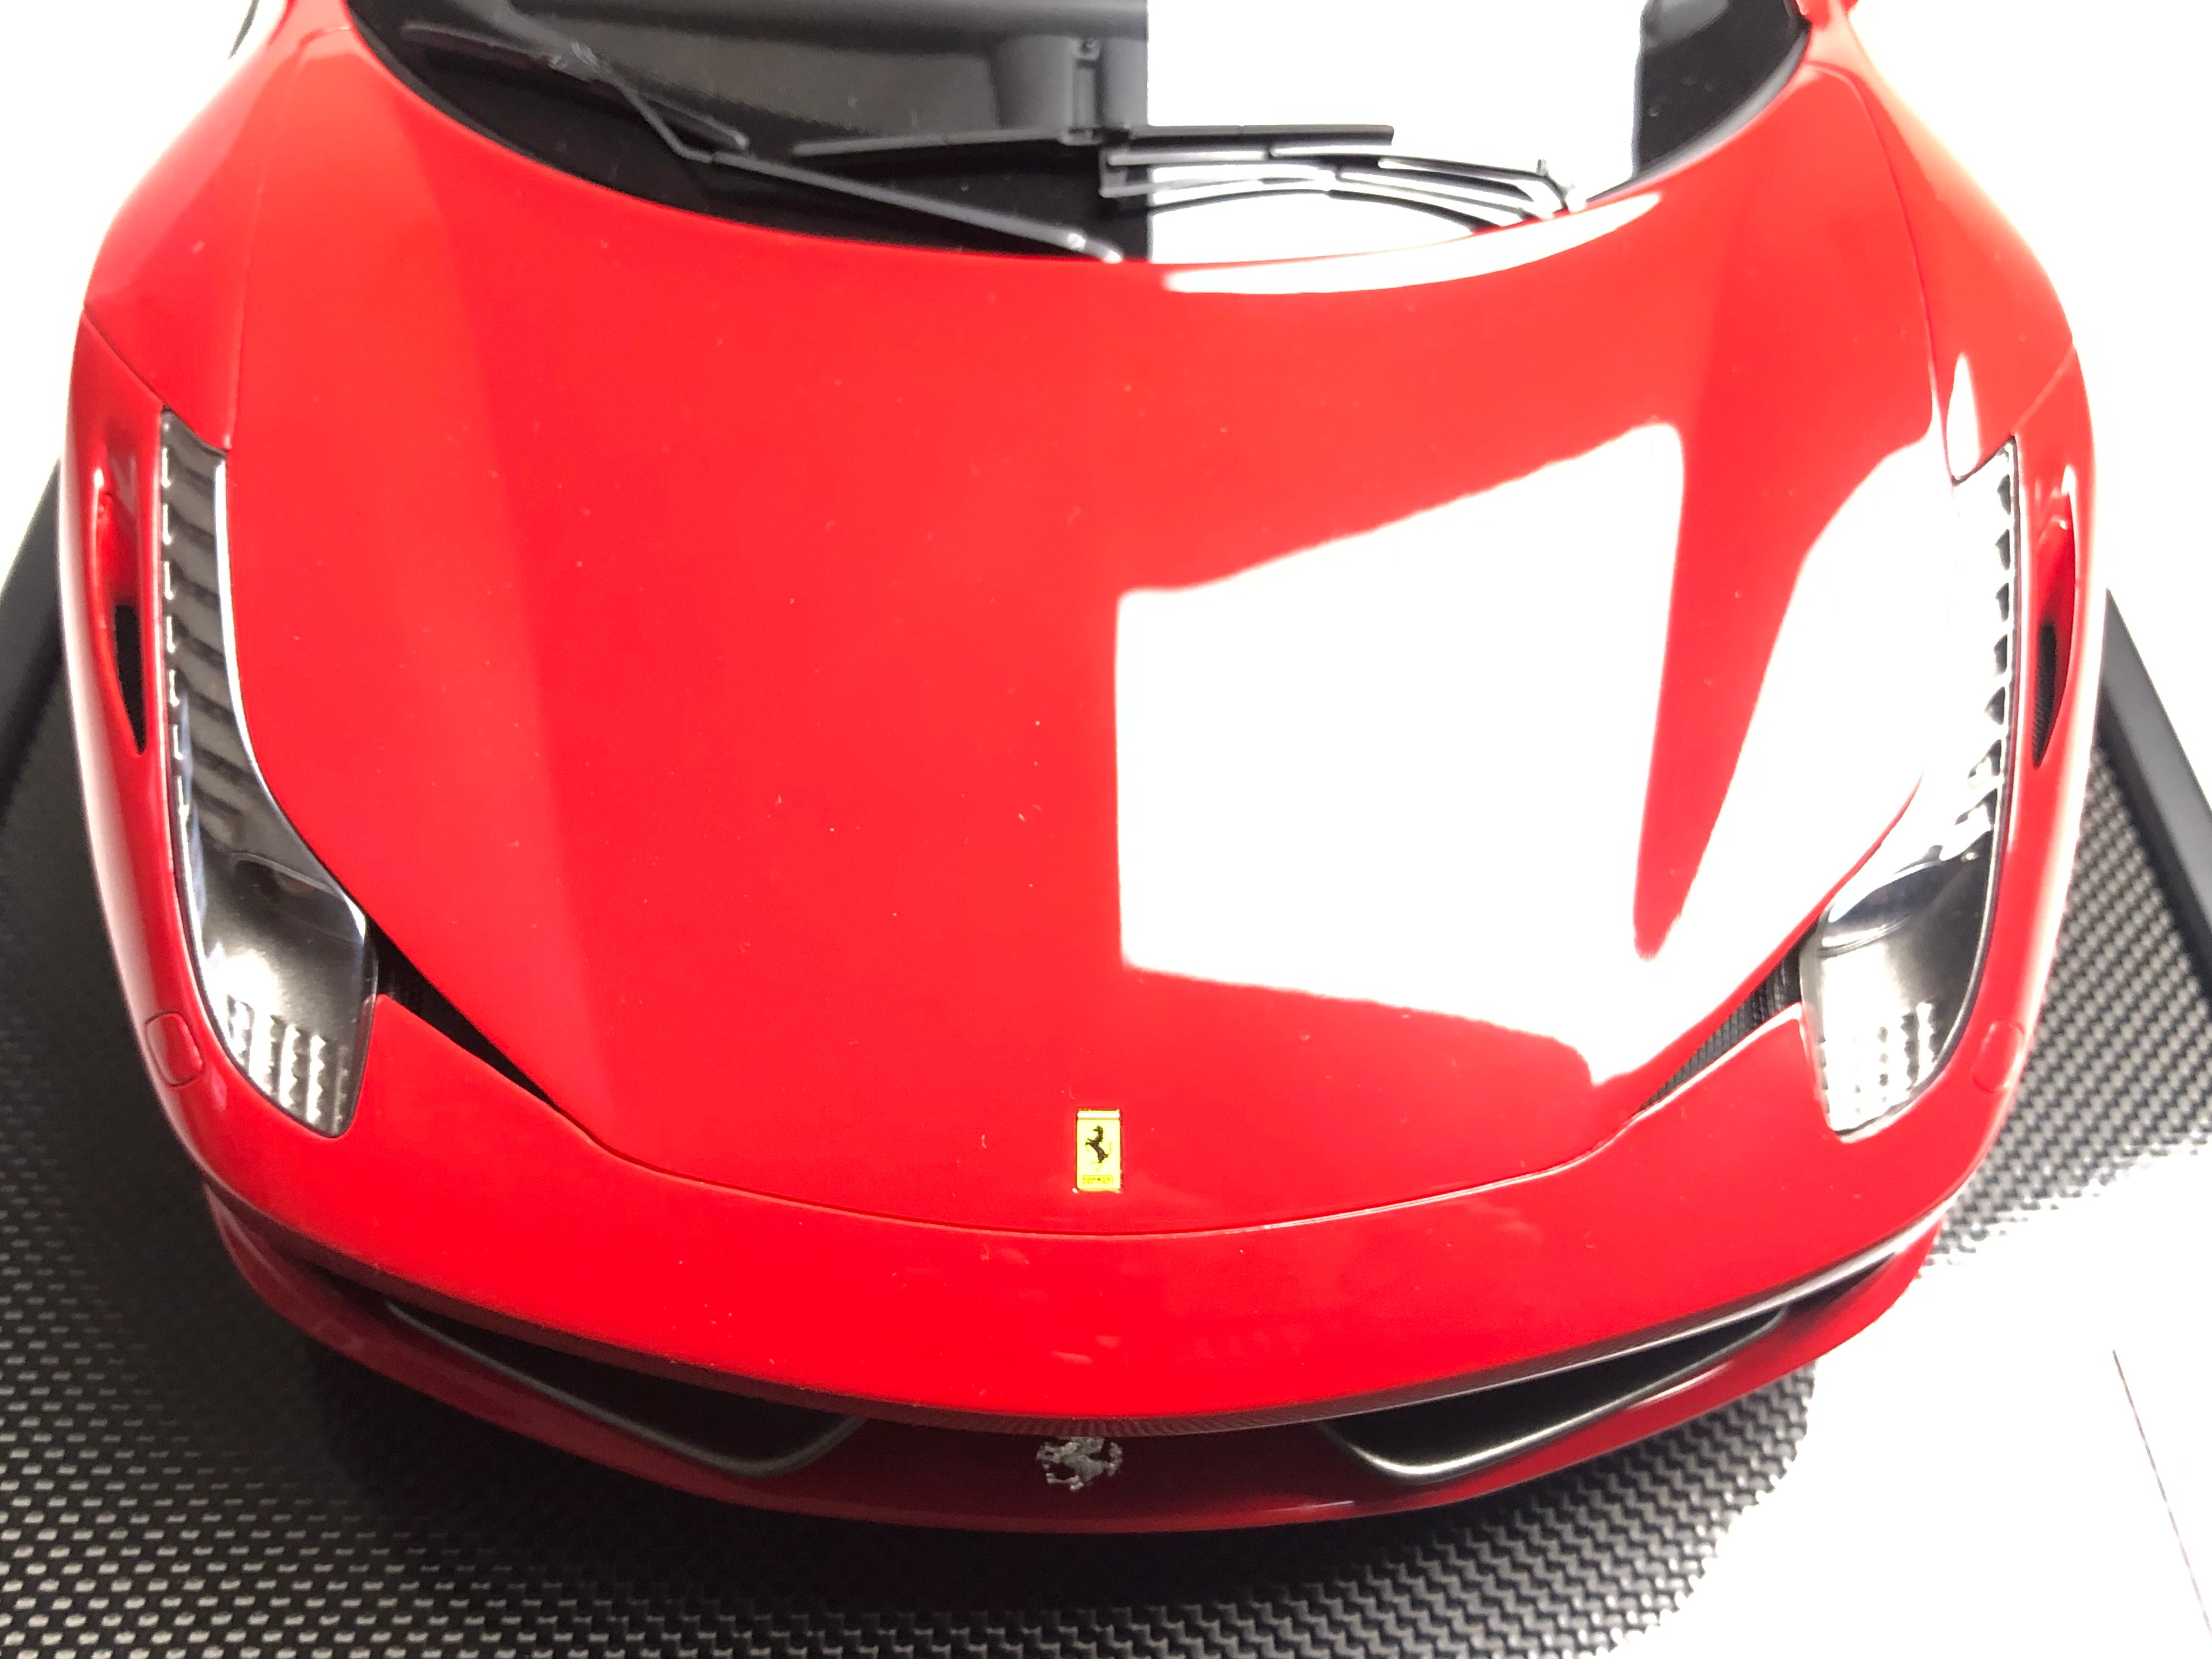 Amalgam 1:8 scale Ferrari 458 Italia